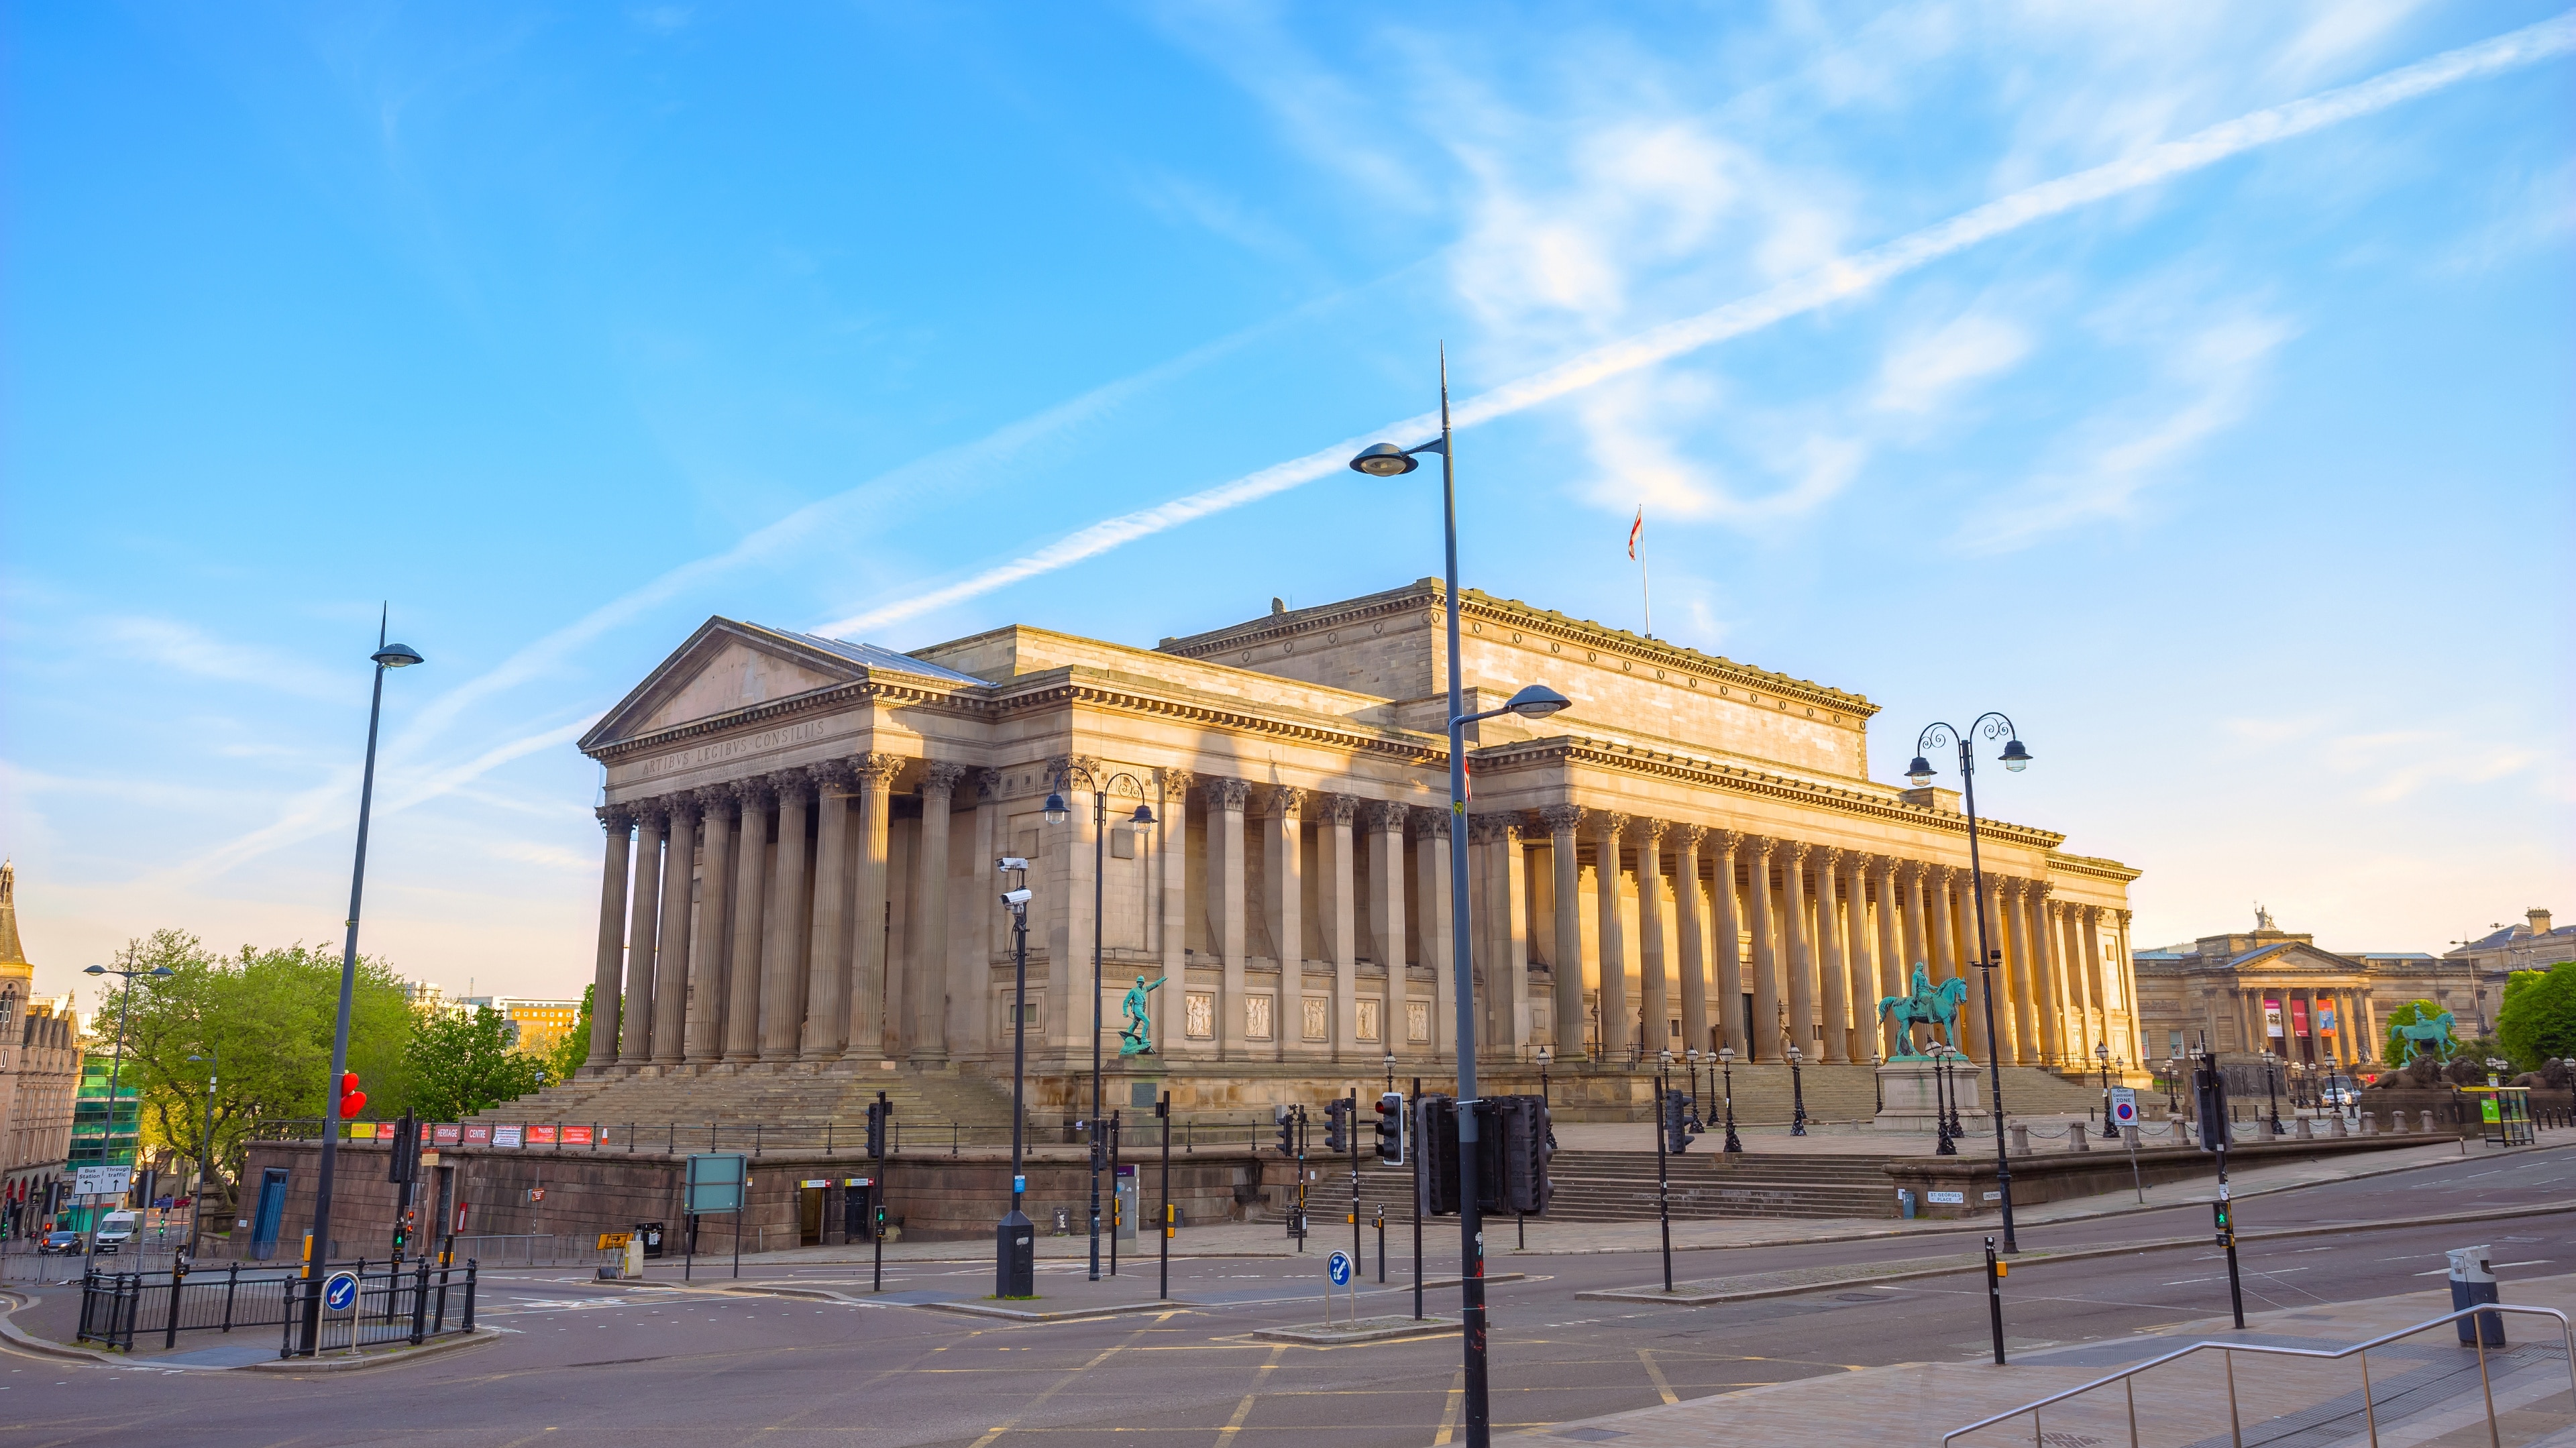 St. George's Hall à : Centre-ville de Liverpool | Expedia